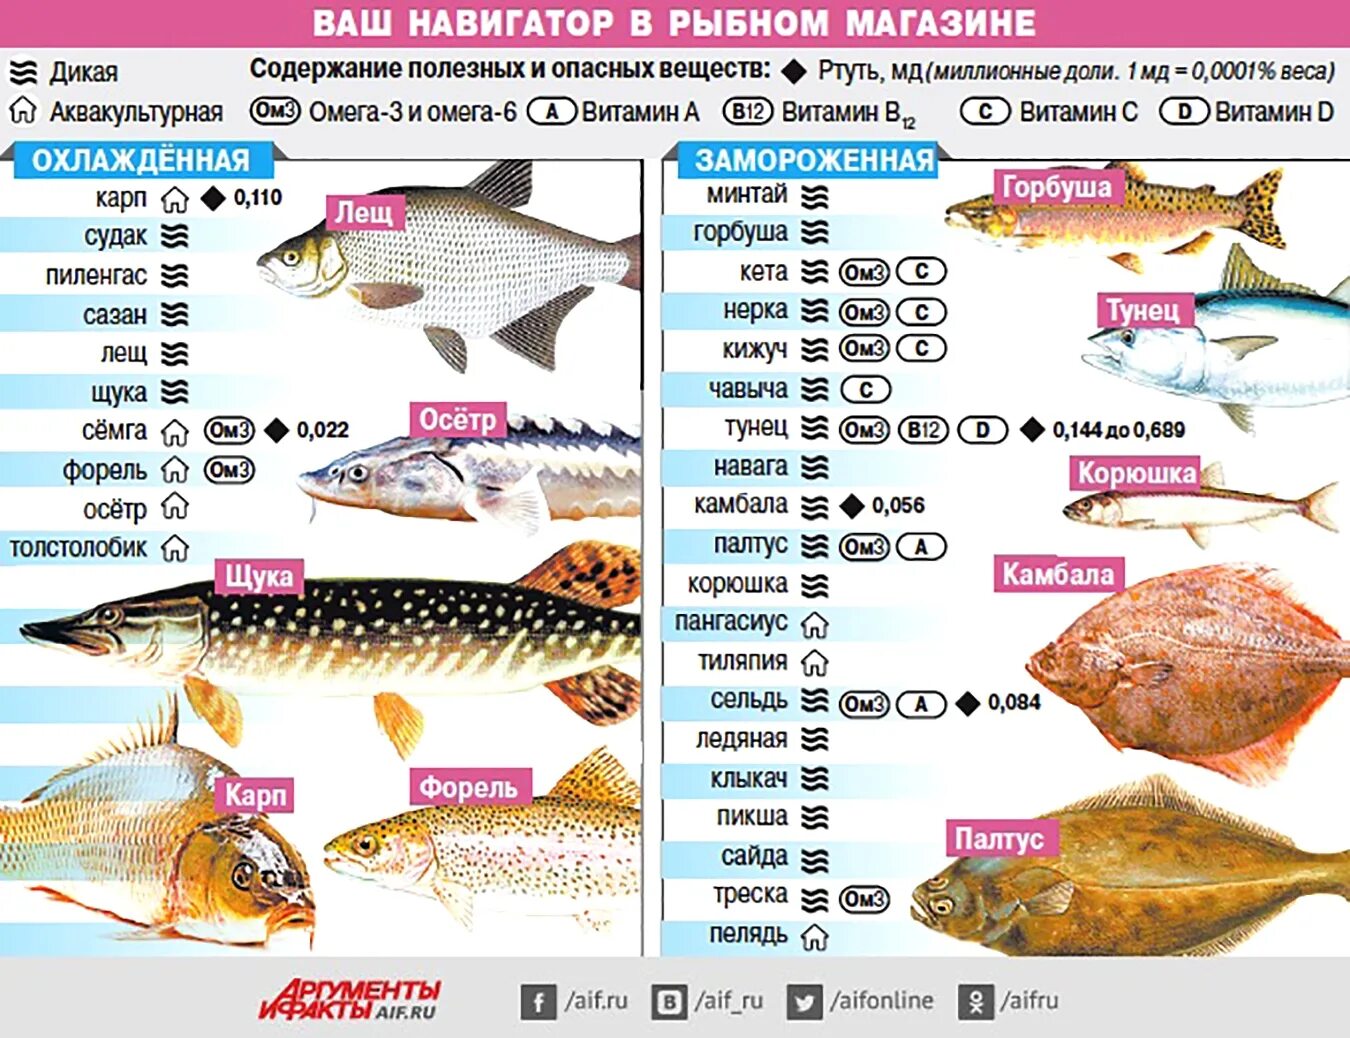 Сколько мяса в рыбе. Самые популярные сорта рыбы. Самые полезные сорта рыбы. Содержание витаминов в рыбе. Таблица полезной рыбы.